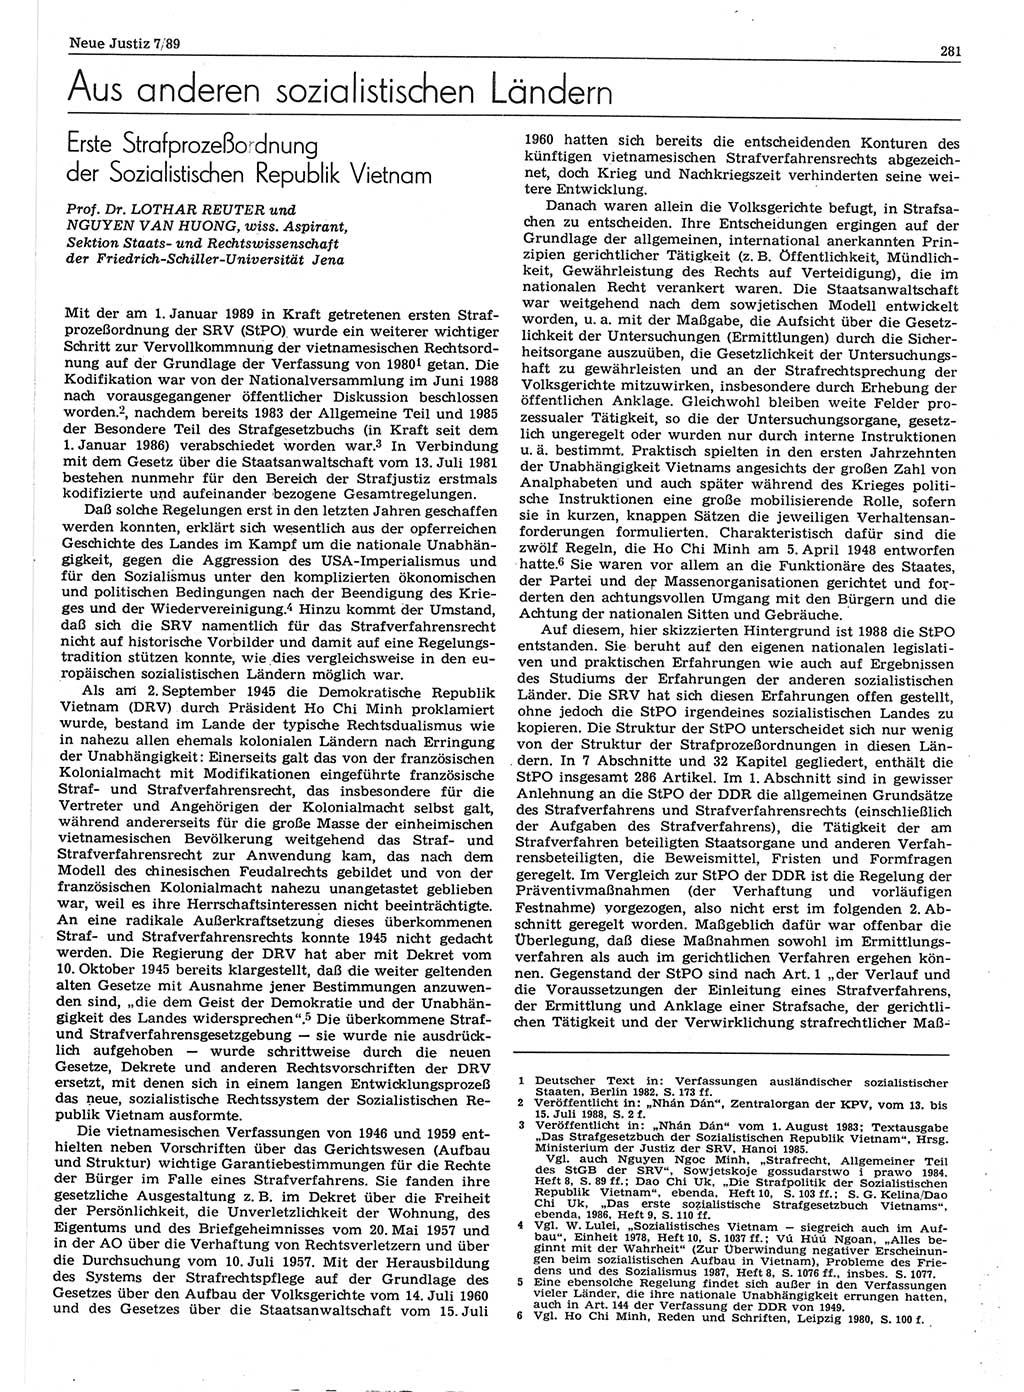 Neue Justiz (NJ), Zeitschrift für sozialistisches Recht und Gesetzlichkeit [Deutsche Demokratische Republik (DDR)], 43. Jahrgang 1989, Seite 281 (NJ DDR 1989, S. 281)